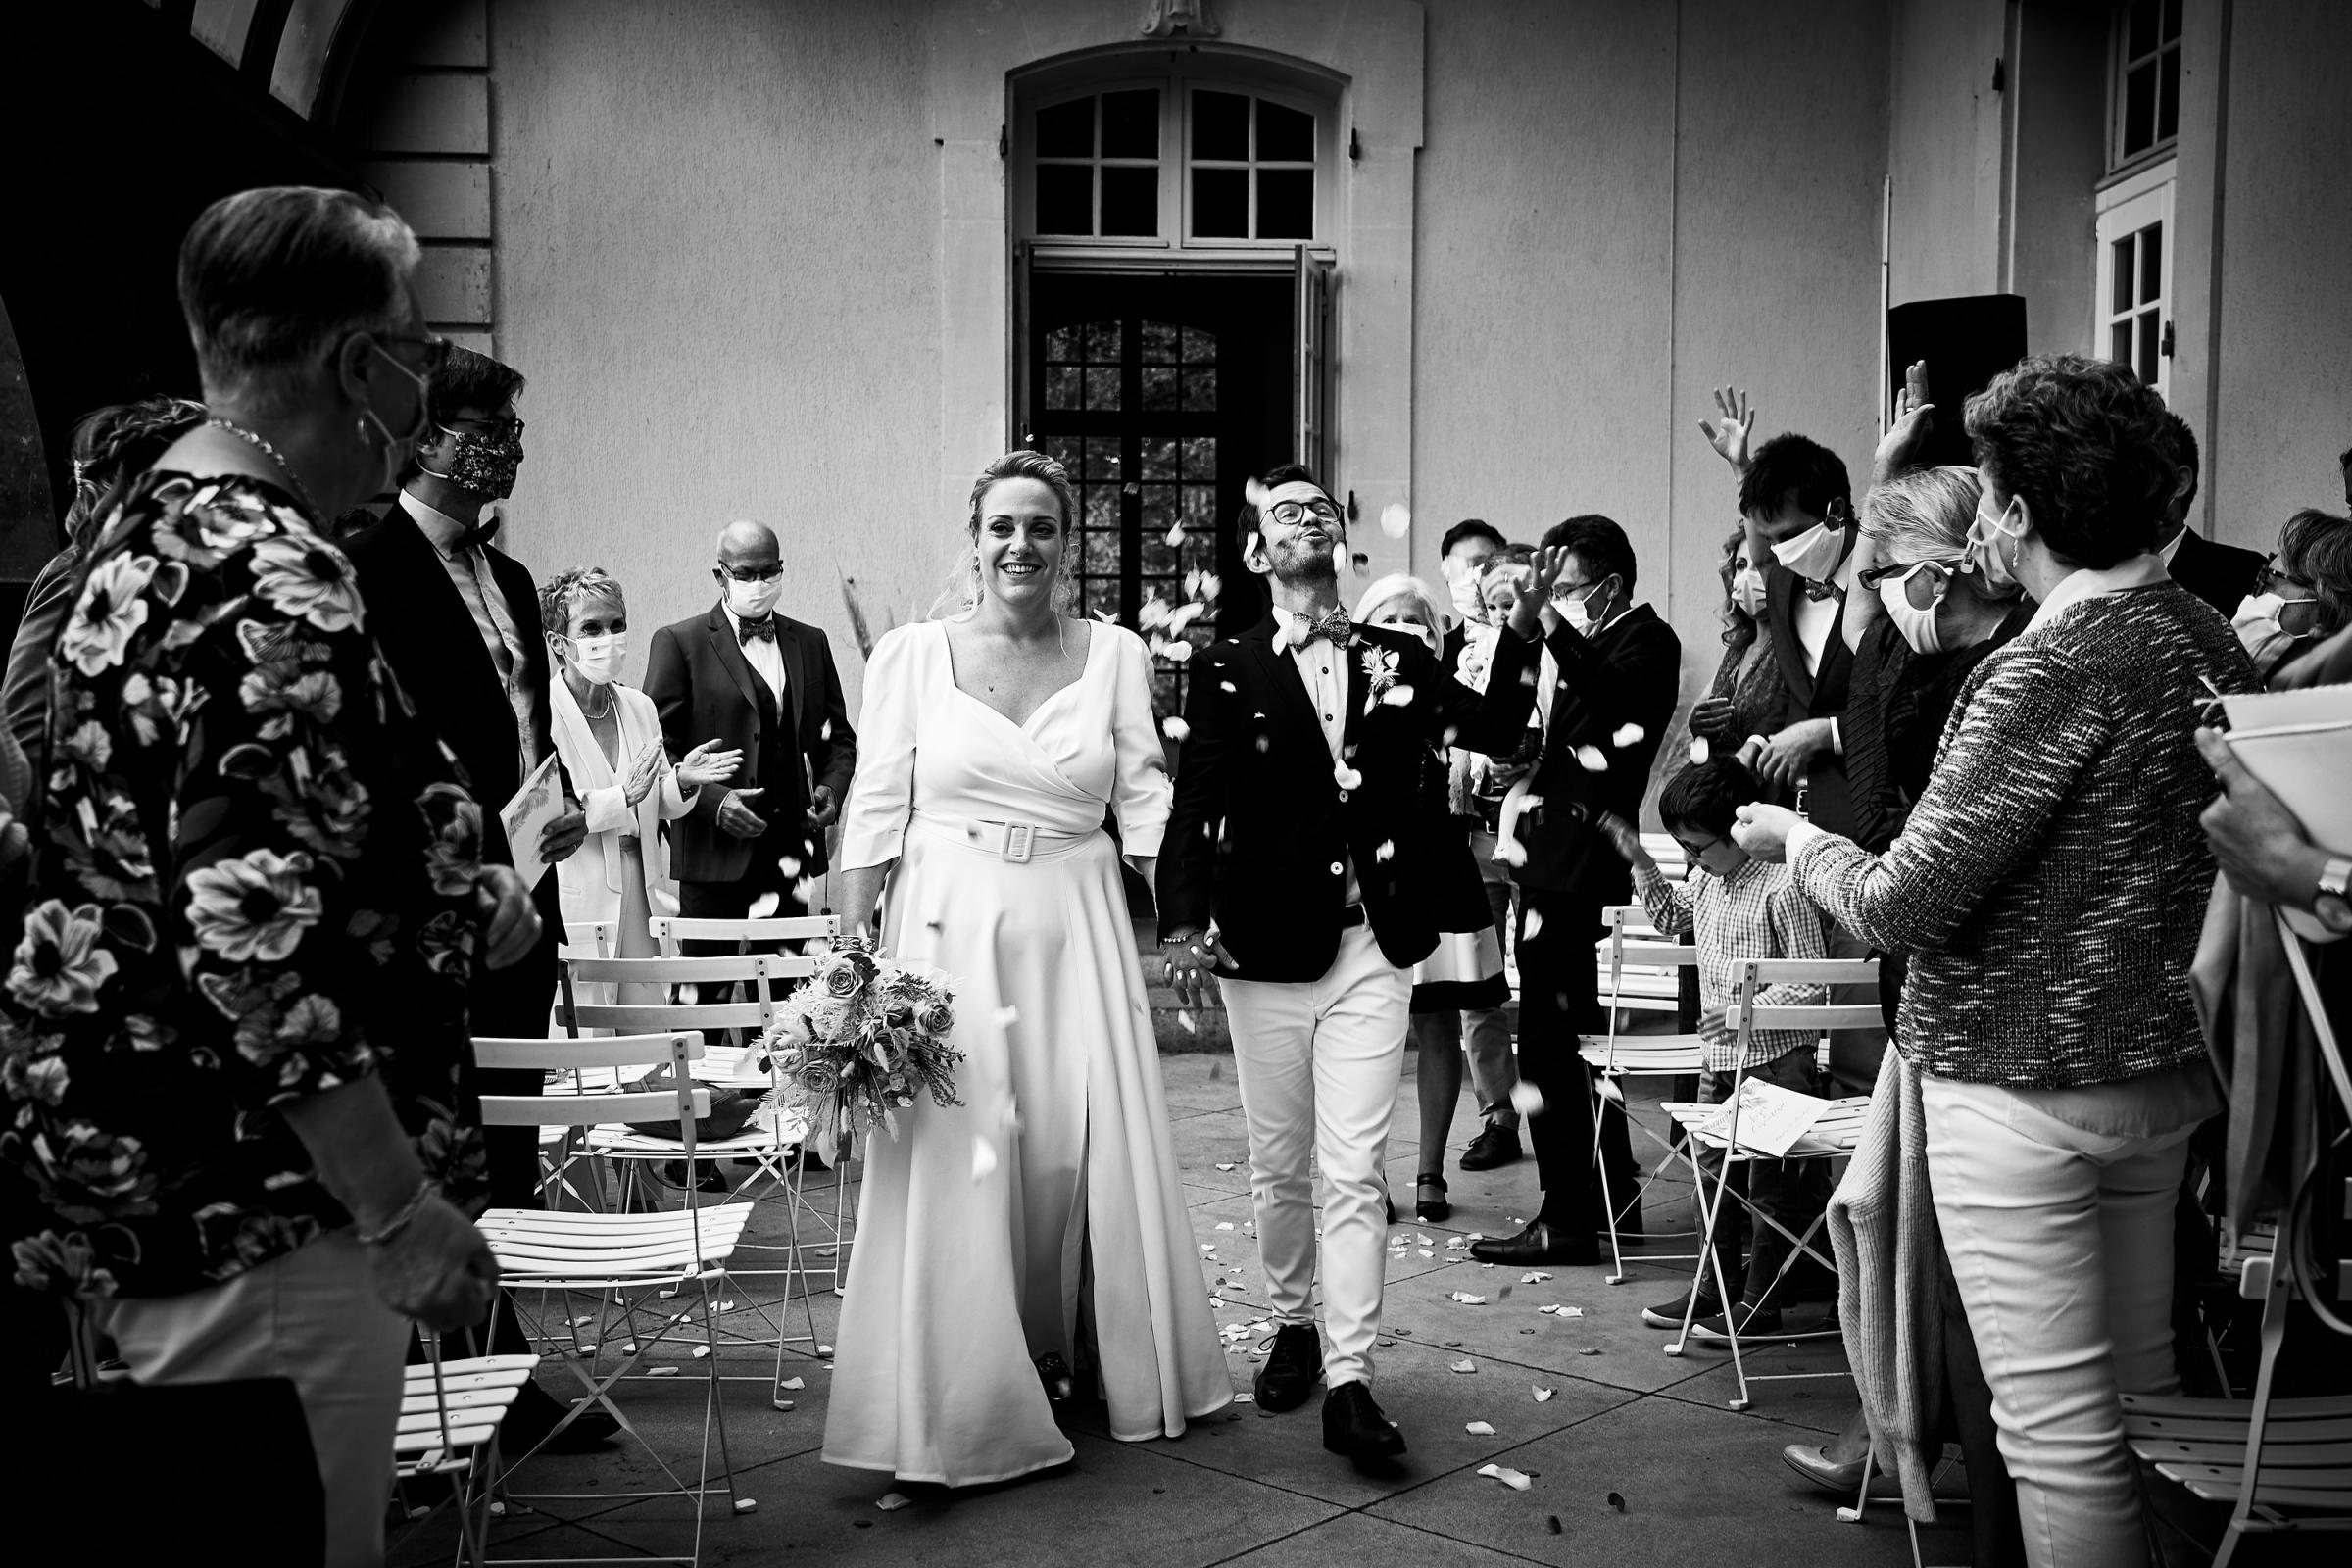 photographes-vidéaste-mariage-chateau-rajat-lyon-amelie-michael-juetjuphotographie